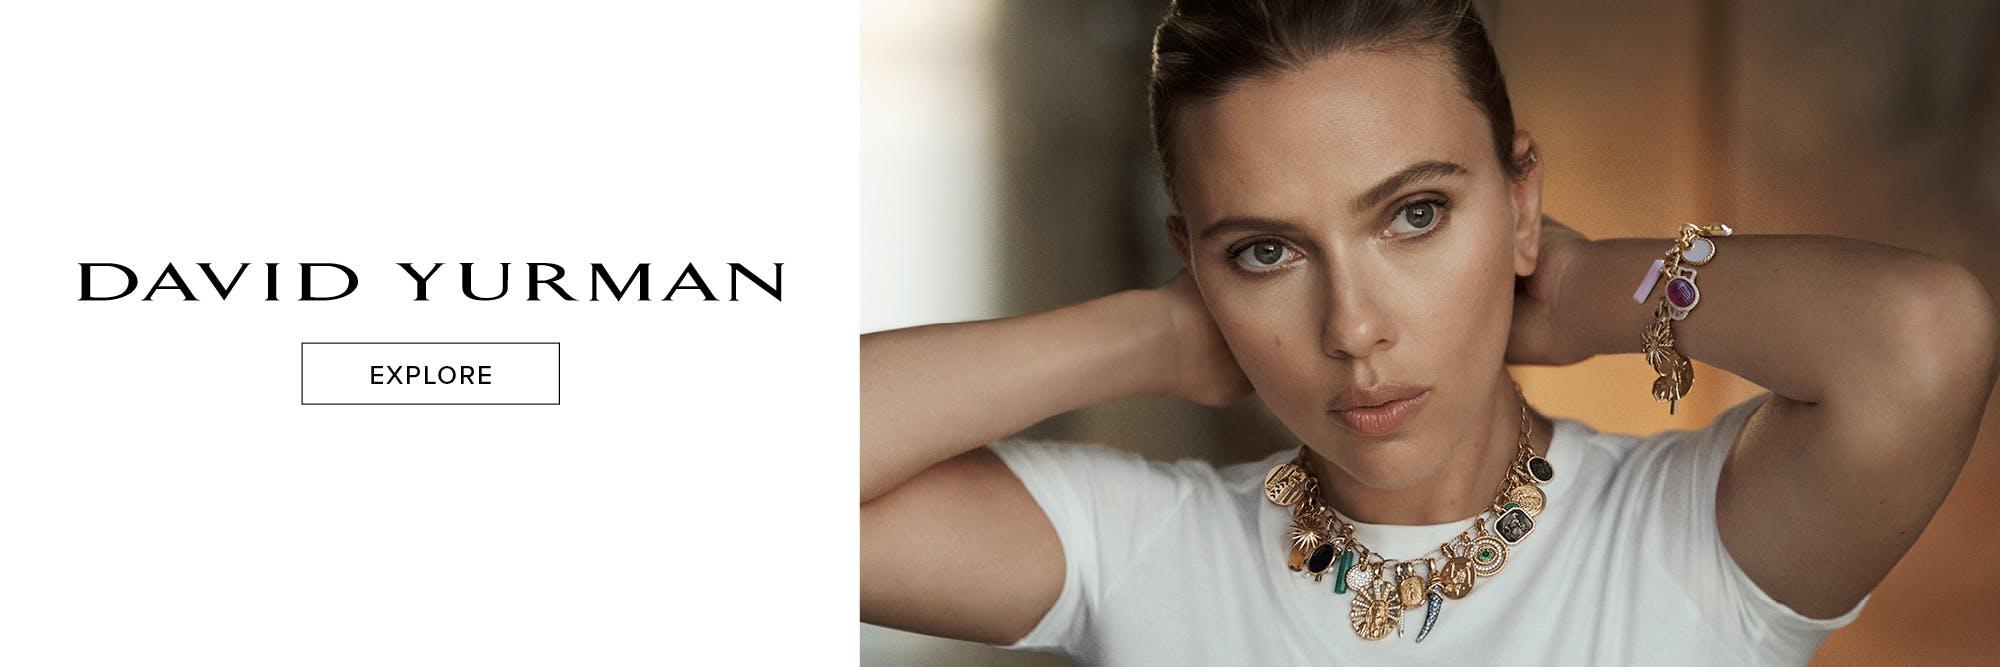 Scarlett Johansson in the new Come Closer campaign with David Yurman.